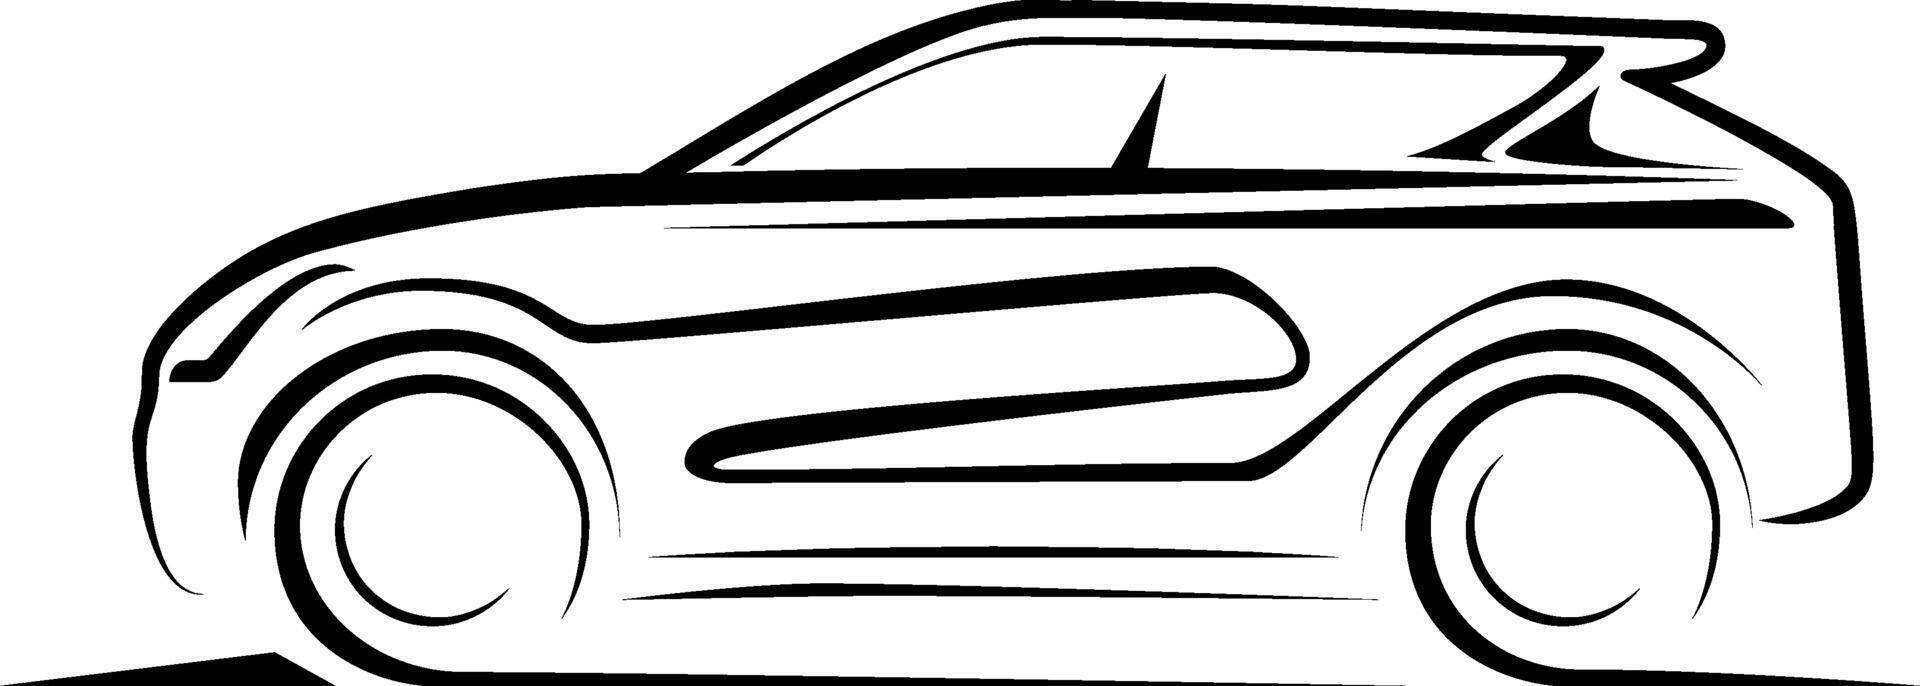 impostato di crossover suv auto servizio logo impostato per settore automobilistico riparazione, servizio, noleggio, i saldi attività commerciale vettore modelli.